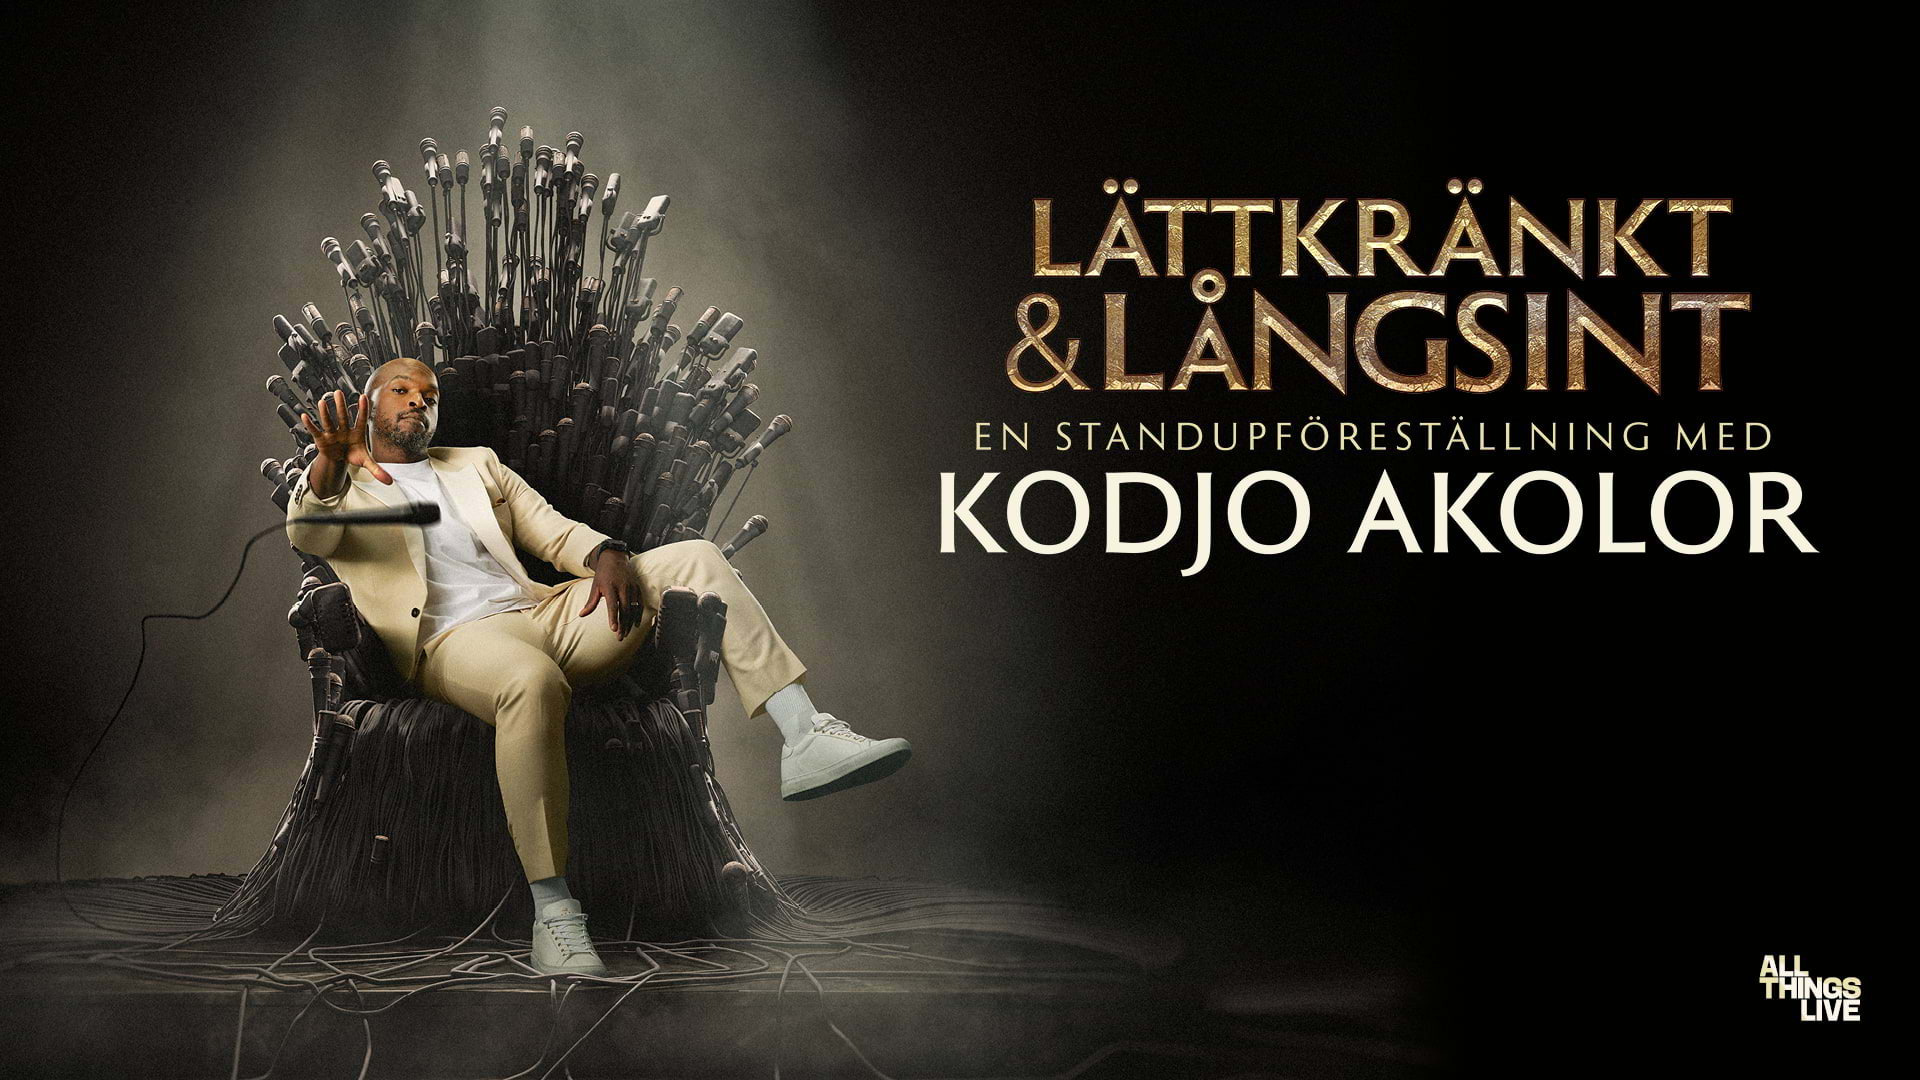 Kodjo Akolor förlänger standupturnén med nya datum i Göteborg i vår